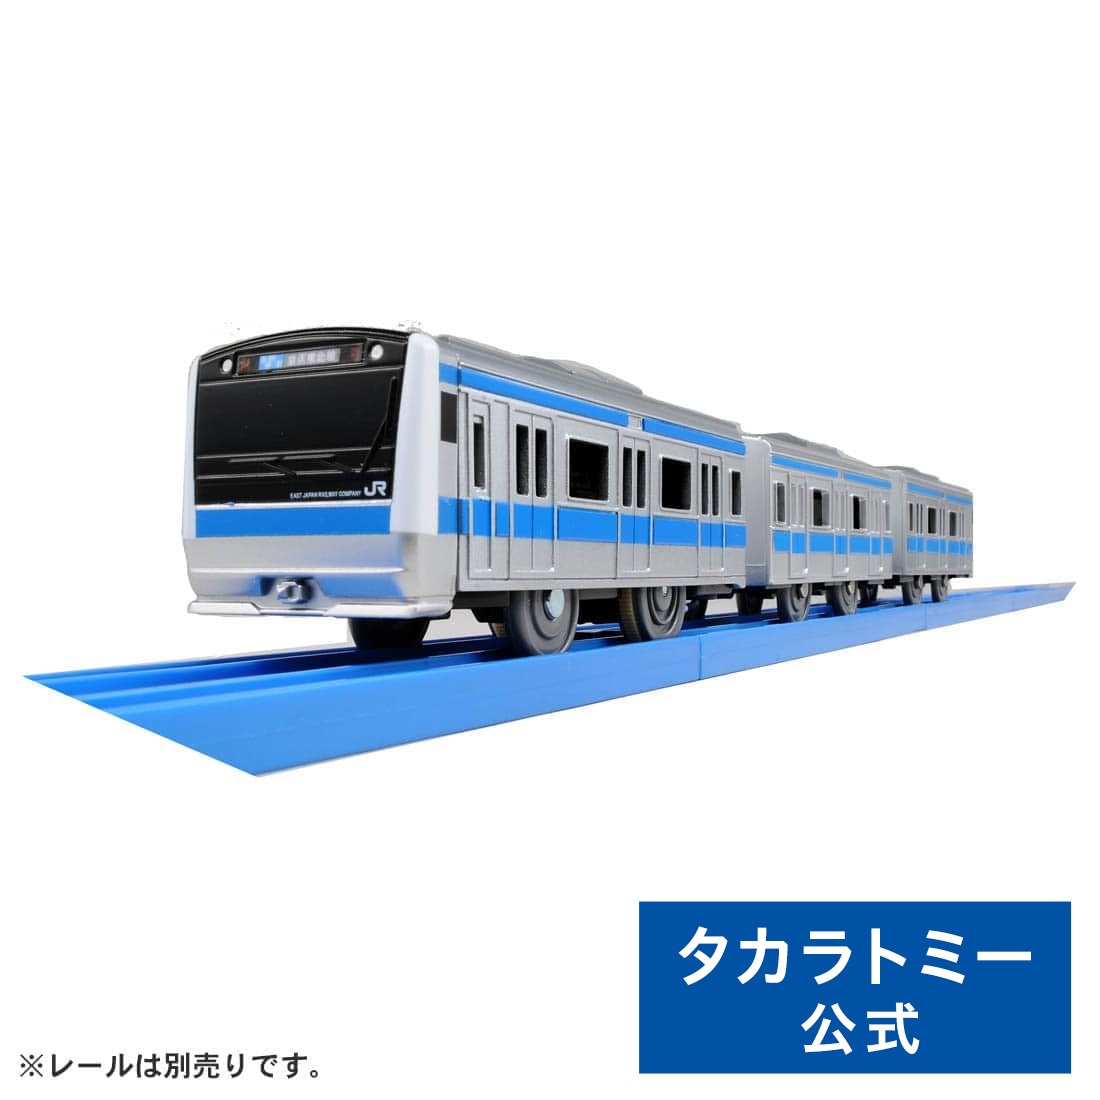 プラレール S-33E233系京浜東北線 プラレール タカラトミー 電車 新幹線 列車 乗り物 おもちゃ こども 子供 ギフト プレゼント